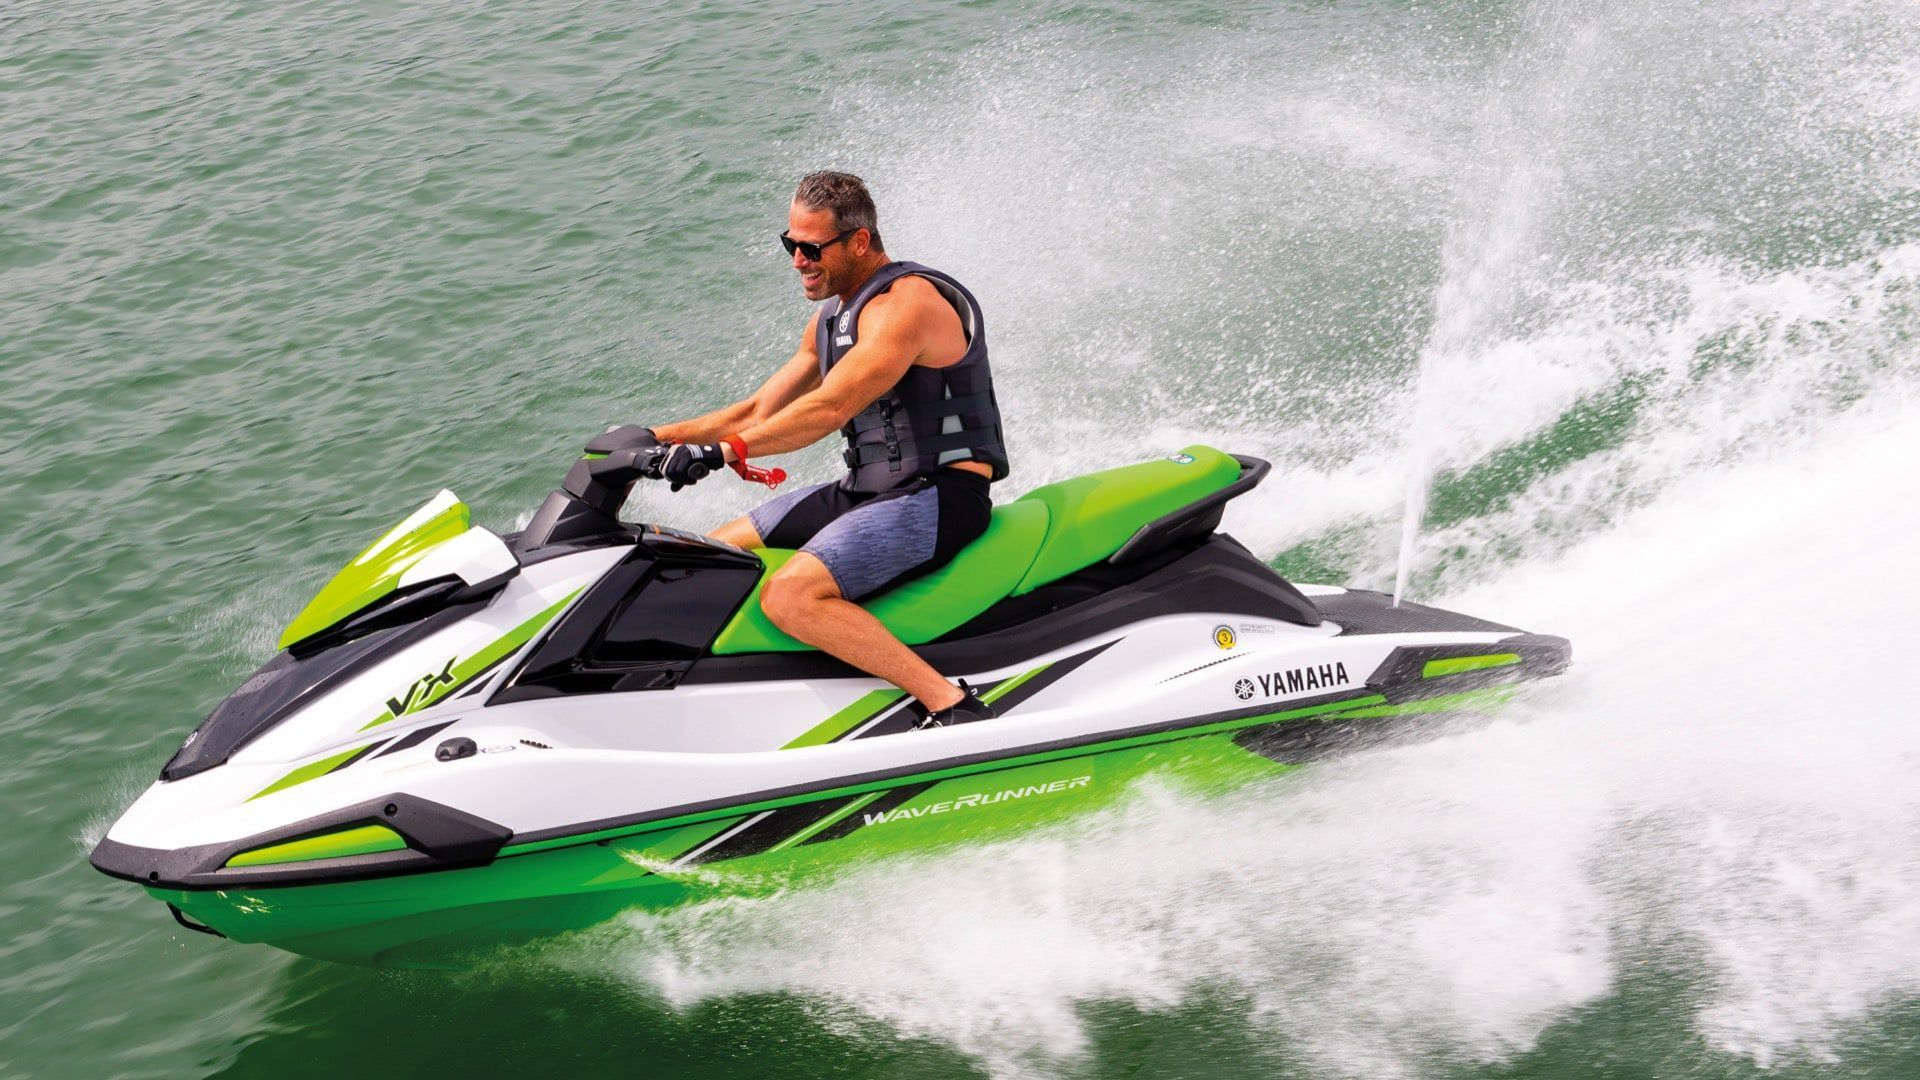 Yamaha Waverunner Jetskis / Jetboote neu oder gebraucht kaufen • Boote Pfister